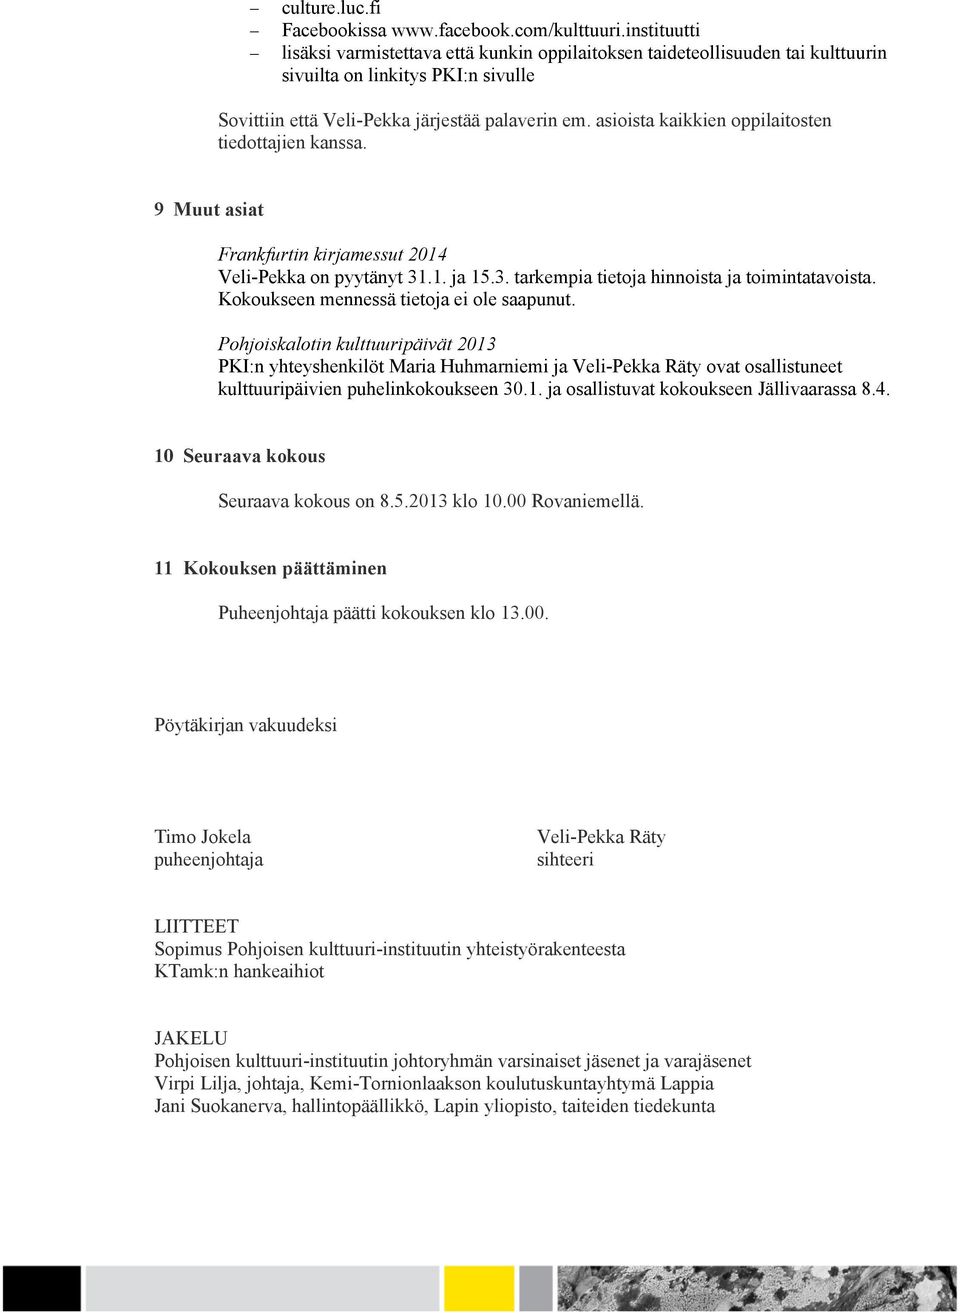 asioista kaikkien oppilaitosten tiedottajien kanssa. 9 Muut asiat Frankfurtin kirjamessut 2014 Veli-Pekka on pyytänyt 31.1. ja 15.3. tarkempia tietoja hinnoista ja toimintatavoista.